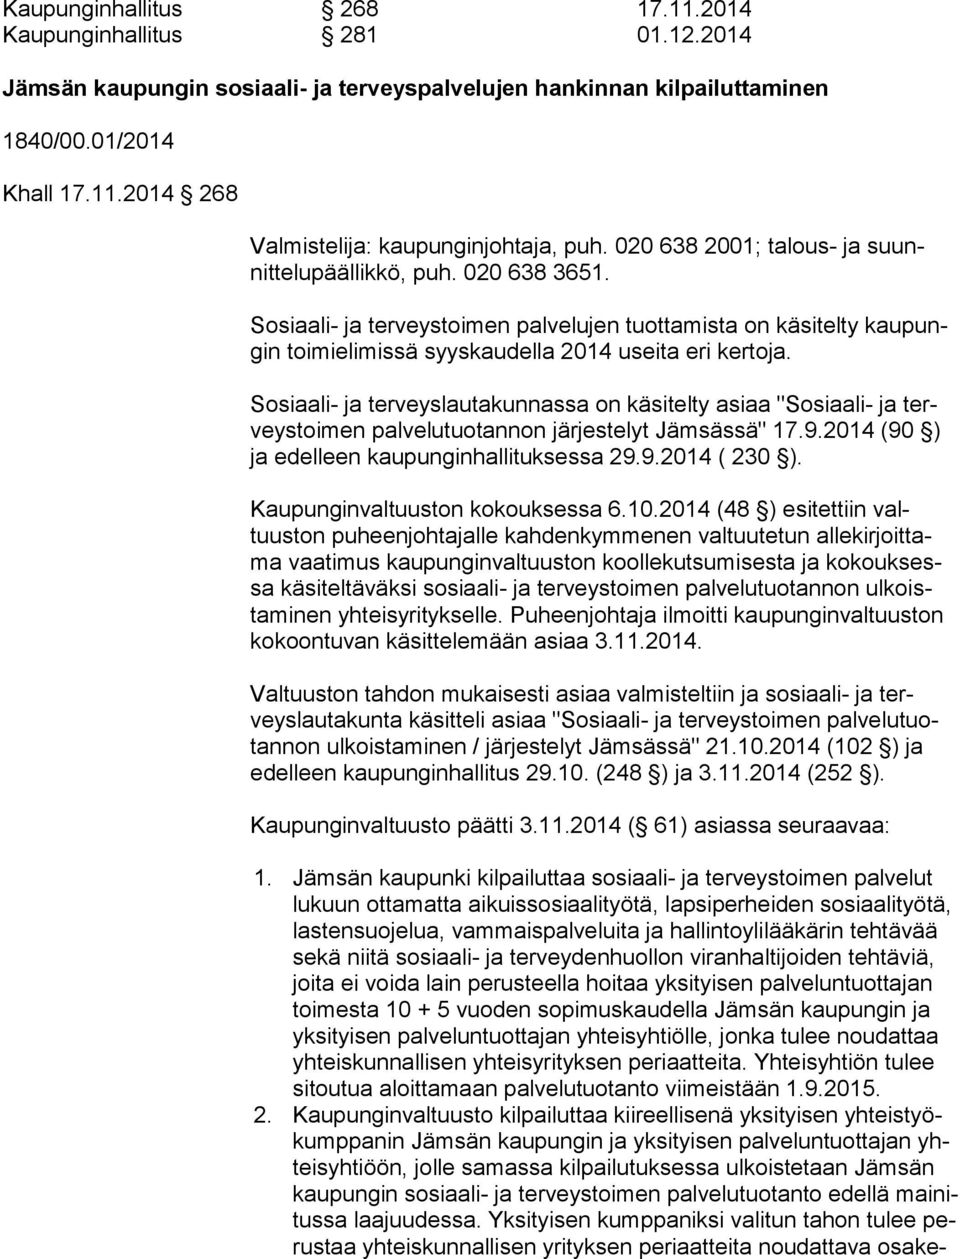 Sosiaali- ja terveyslautakunnassa on käsitelty asiaa "Sosiaali- ja terveys toi men palvelutuotannon järjestelyt Jämsässä" 17.9.2014 (90 ) ja edelleen kaupunginhallituksessa 29.9.2014 ( 230 ).